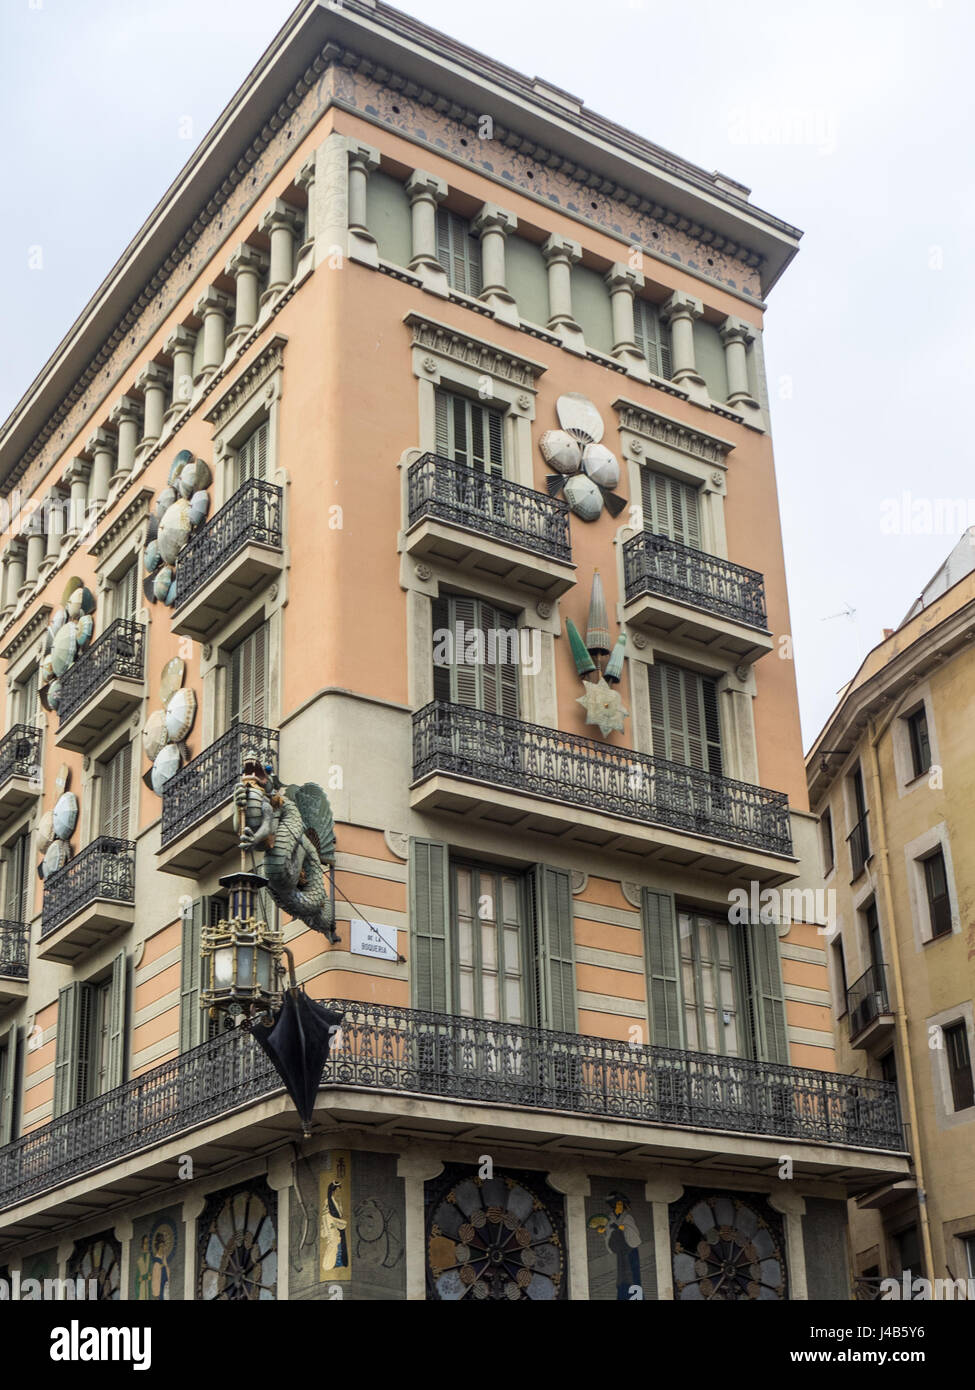 Casa Bruno Cuadros, uno splendido edificio che era una volta un ombrello shop nel 1880, che si trova sulla Rambla, Barcelona, Spagna. Foto Stock